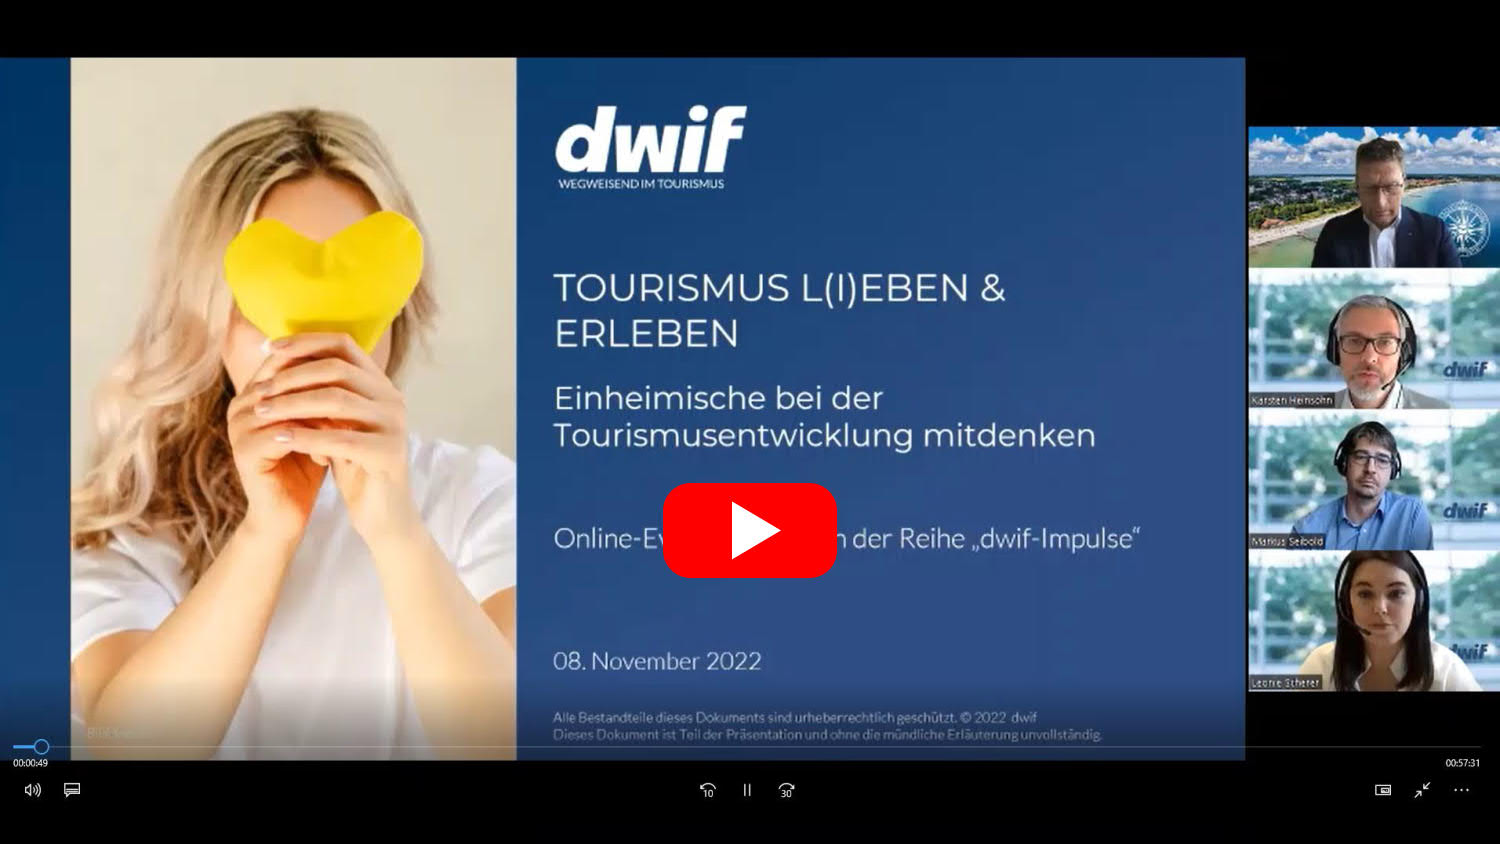 dwif-Impulse: TOURISMUS L(I)EBEN & ERLEBEN Einheimische bei der Tourismusentwicklung mitdenken